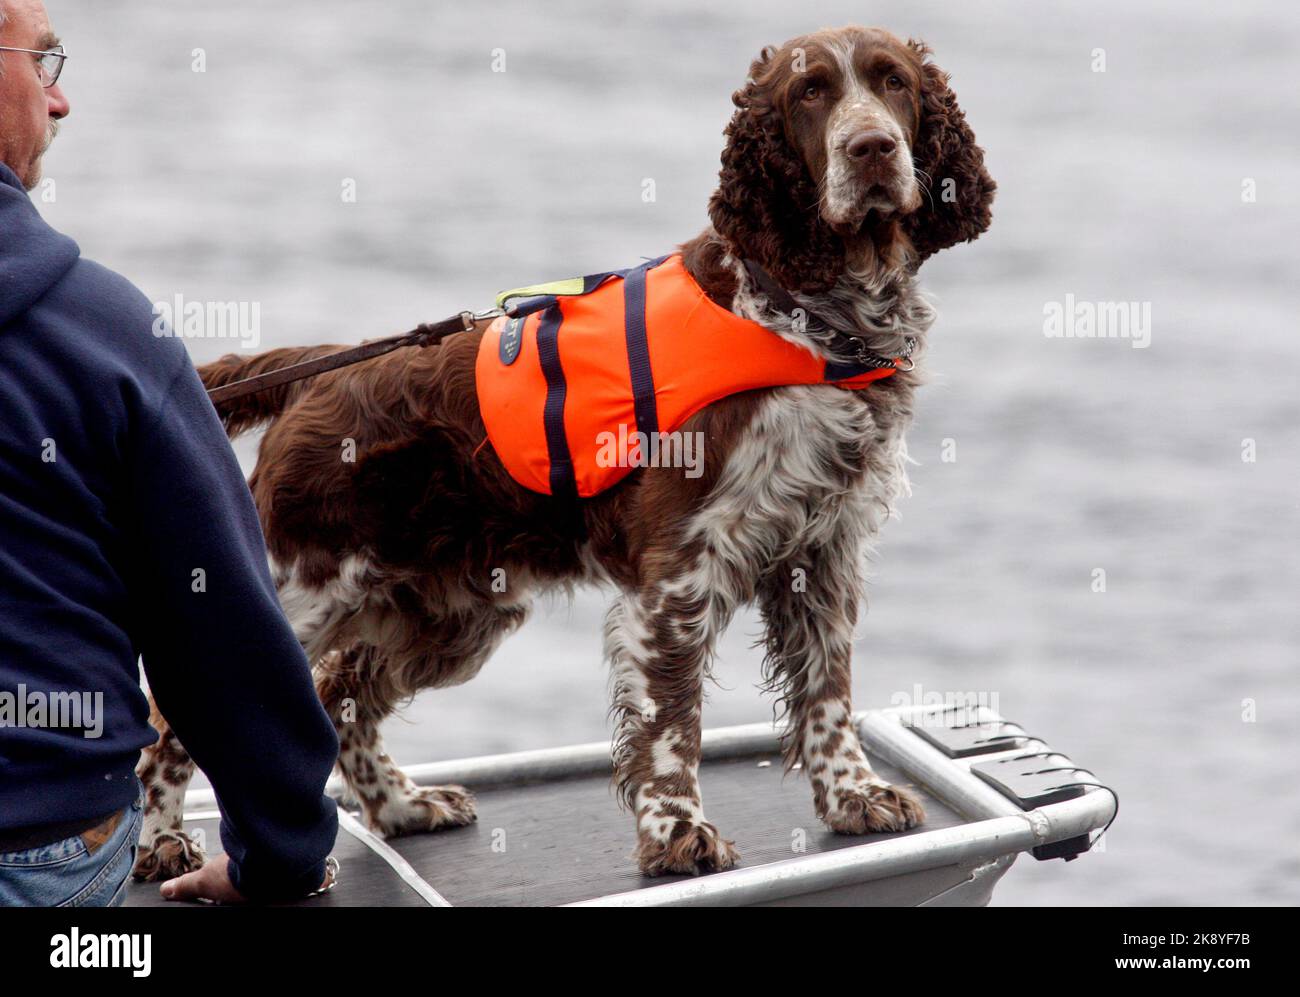 La police cherche une personne disparue, ici elle cherche un lac avec un bateau et un chien de détection de police. Banque D'Images